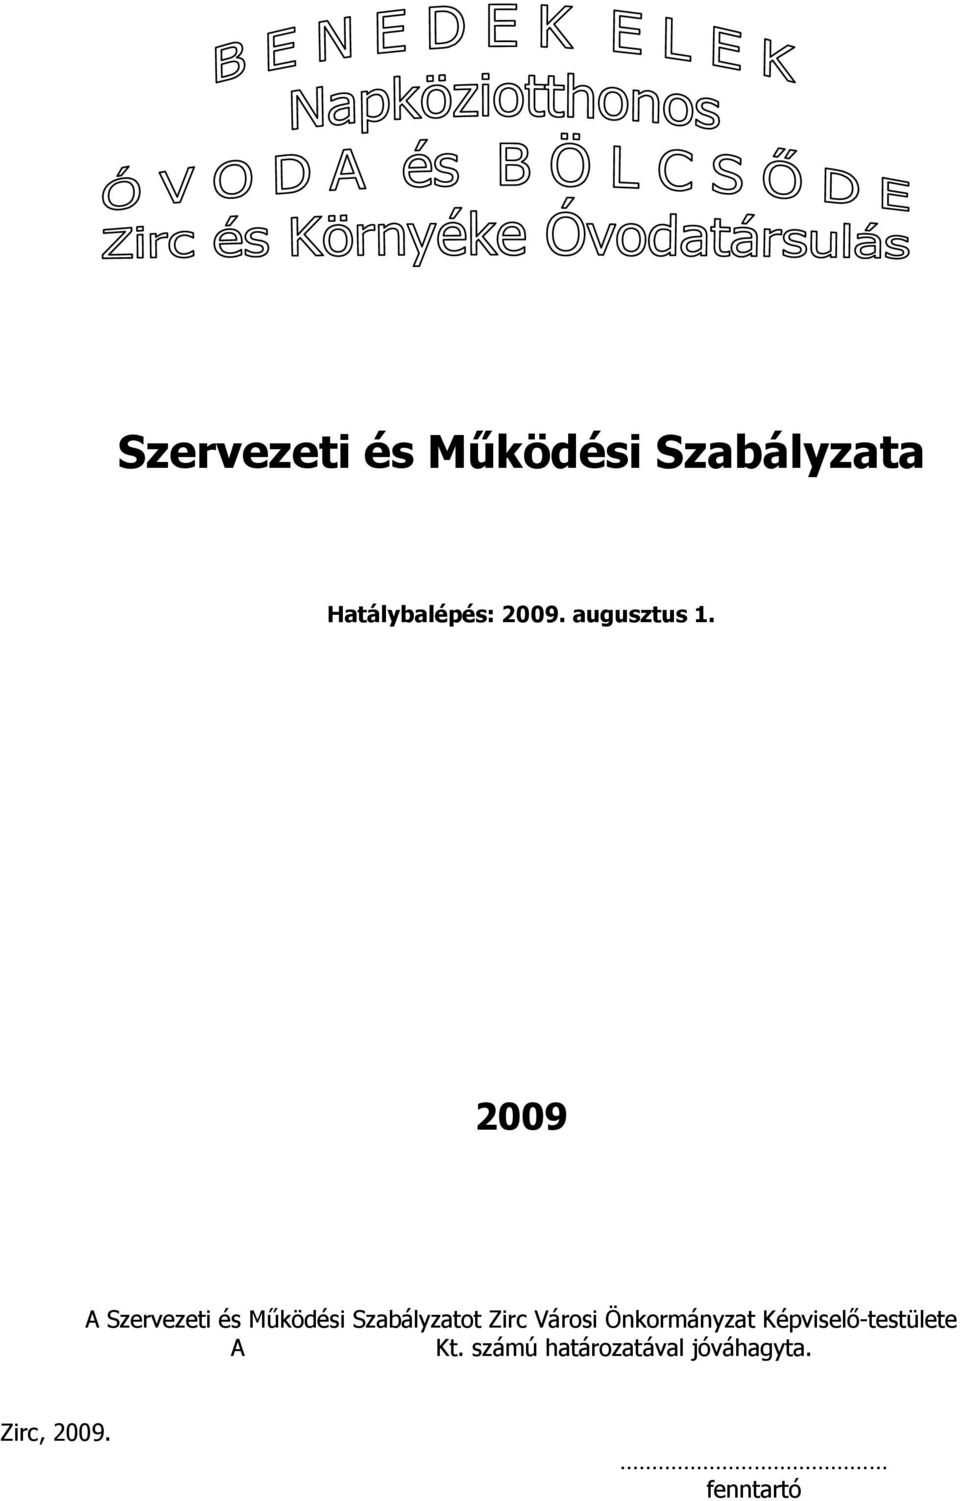 2009 A Szervezeti és Működési Szabályzatot Zirc